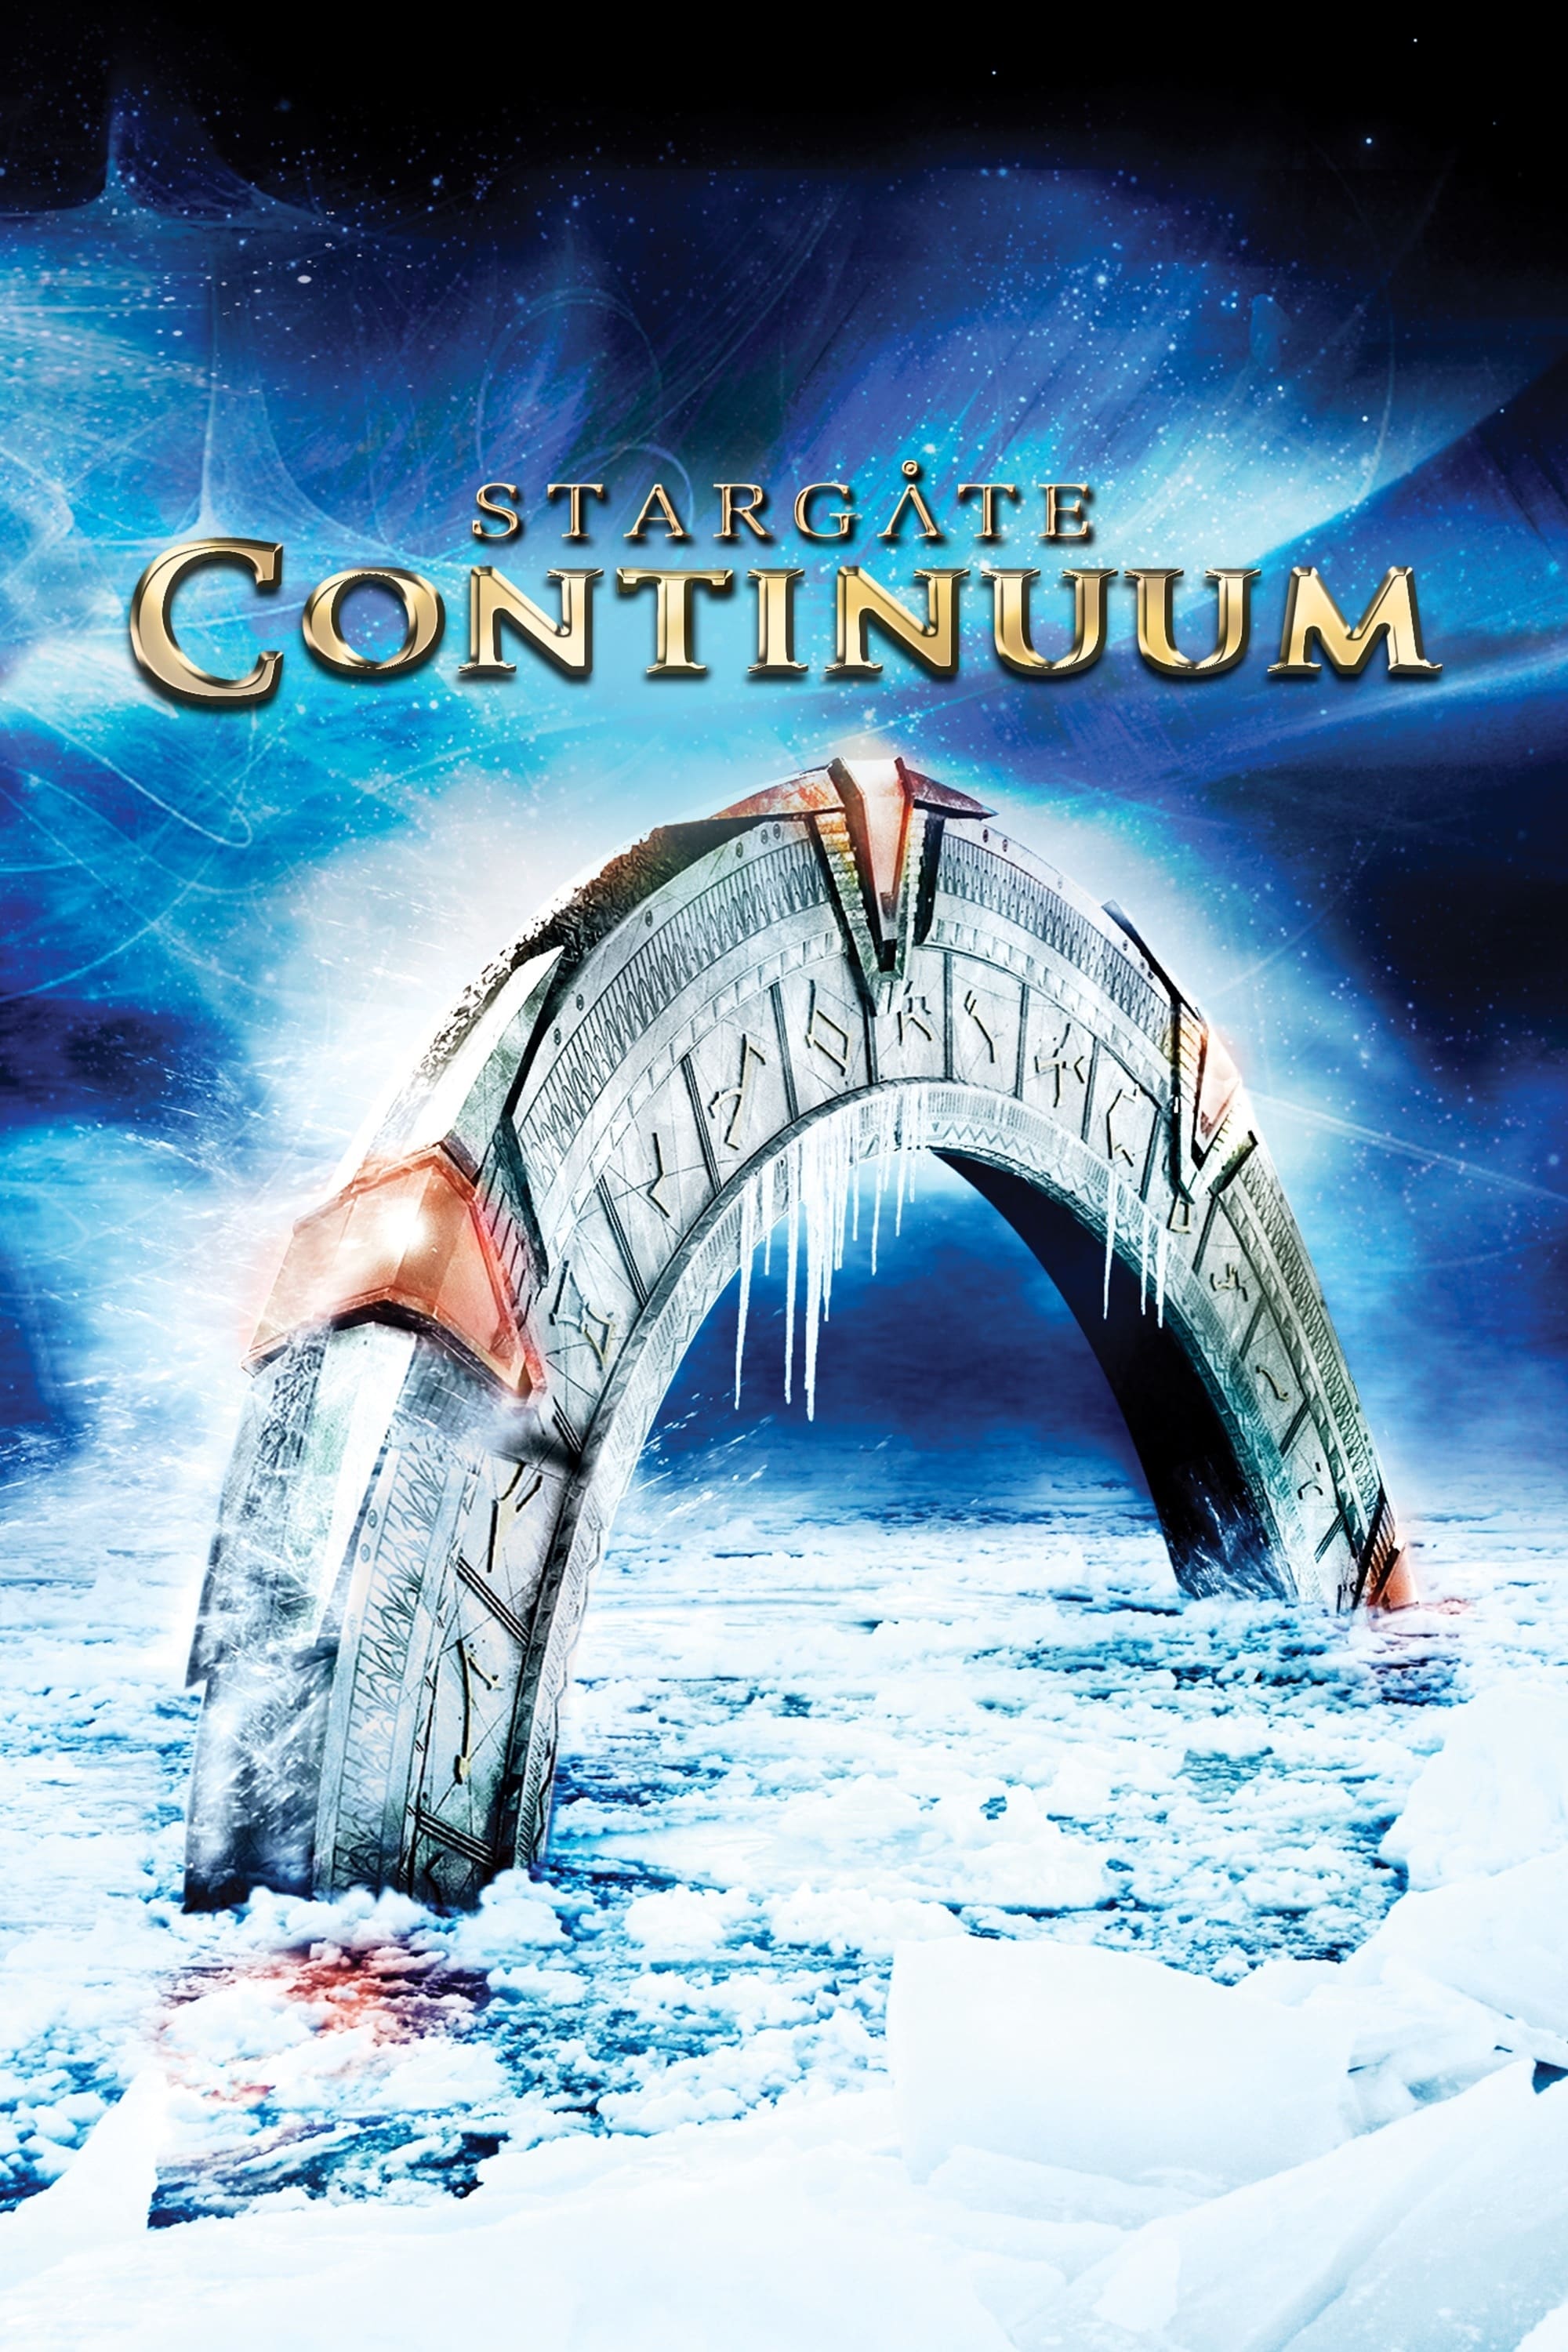 Cổng Trời (Stargate: Continuum) [2008]